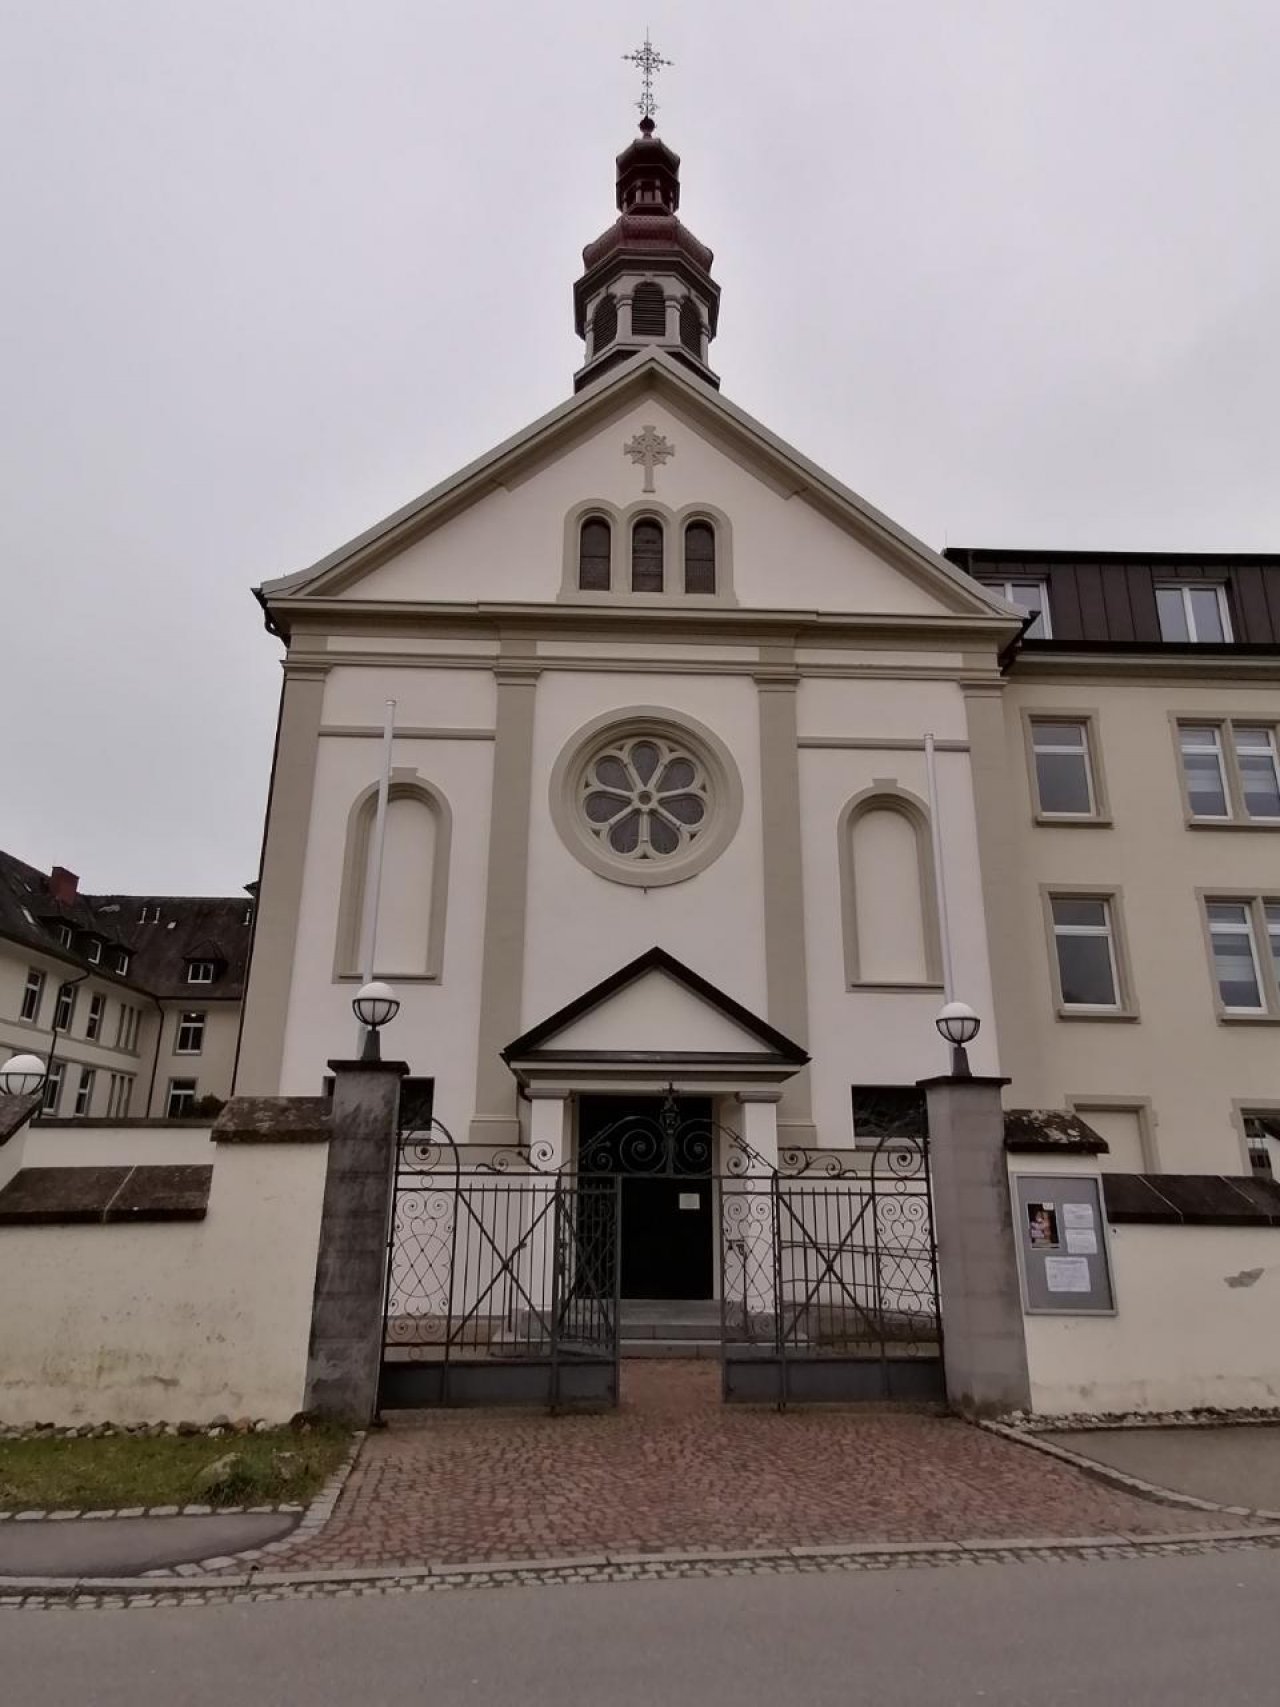 Kirche in Landauf, LandApp BW App spotted by Harry Schneckenburger on 05.01.2021